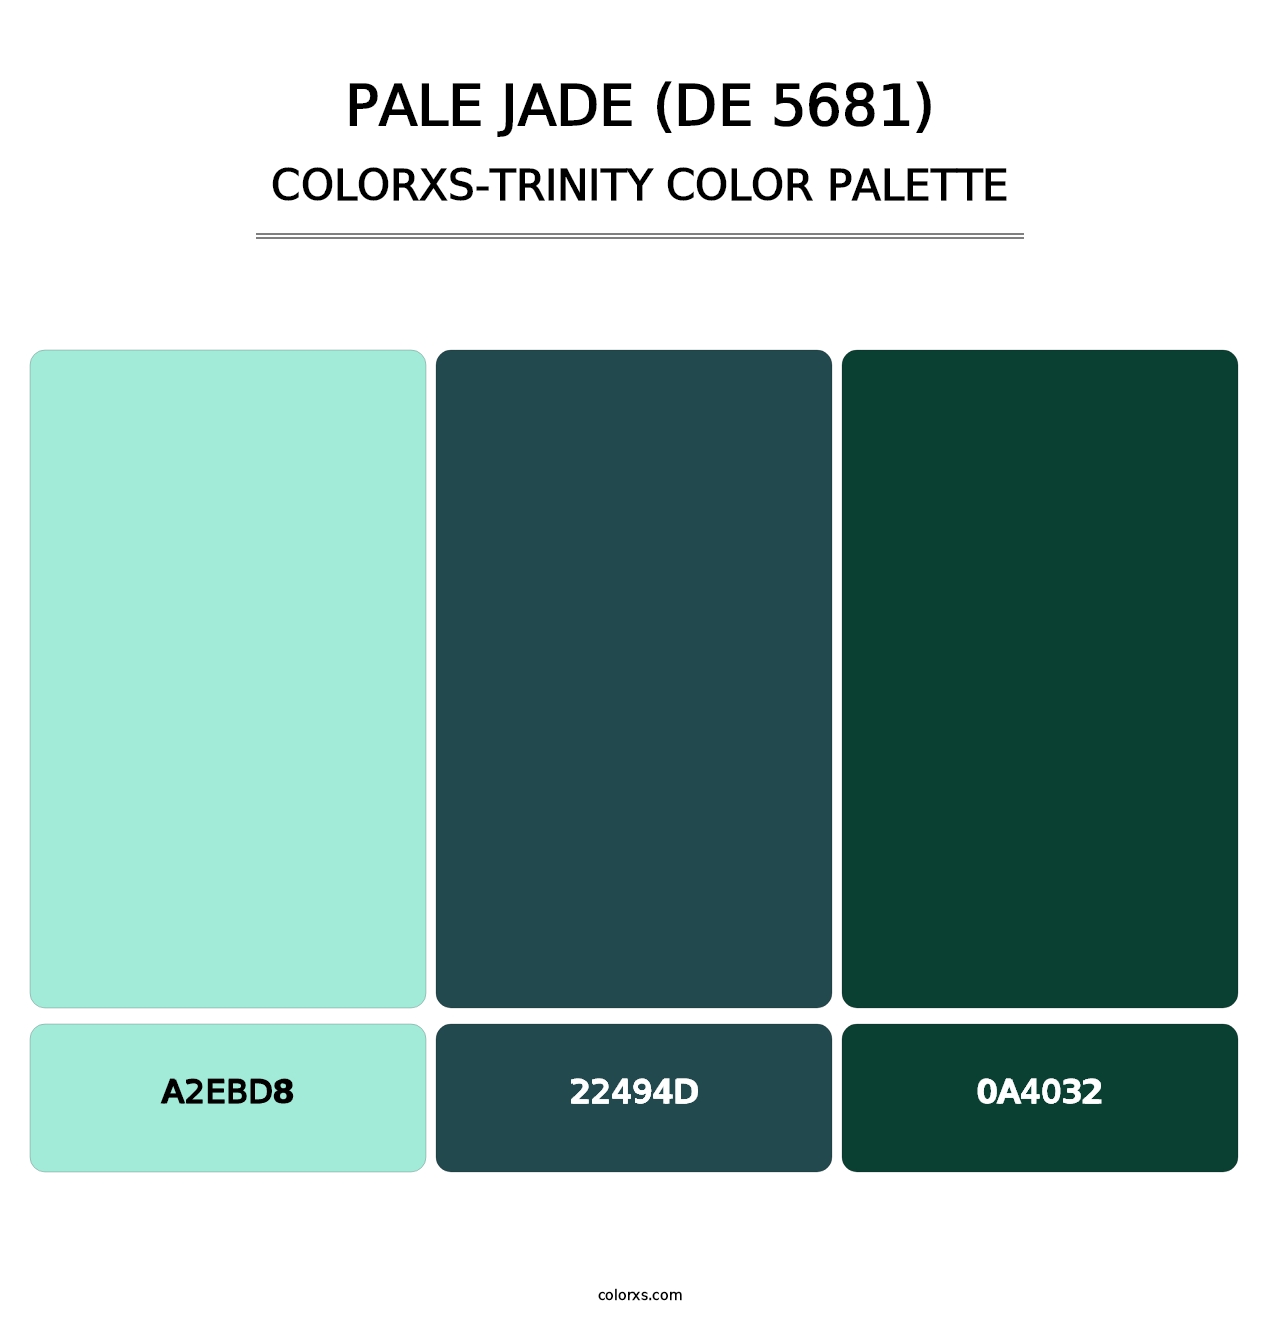 Pale Jade (DE 5681) - Colorxs Trinity Palette